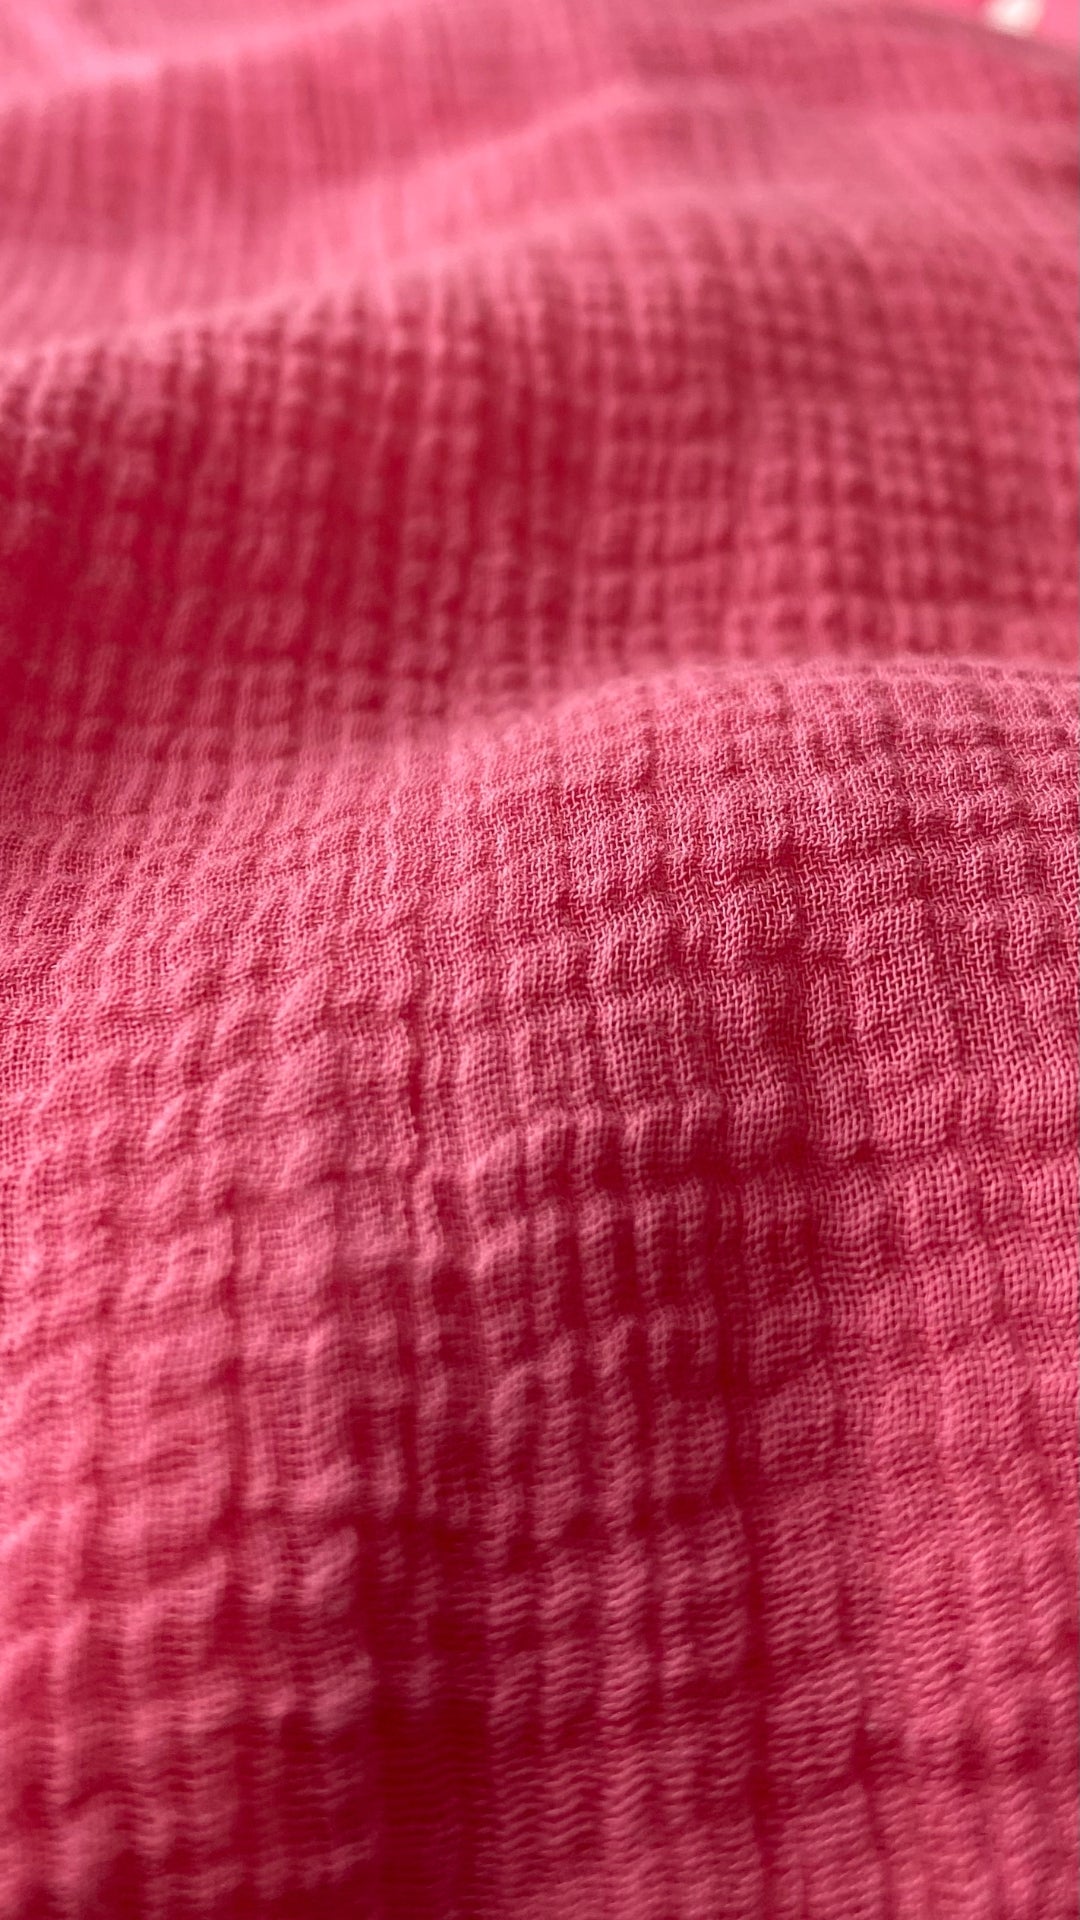 Blouse gaze de coton rose Tommy Bahama, taille small. Vue de près du tissu.